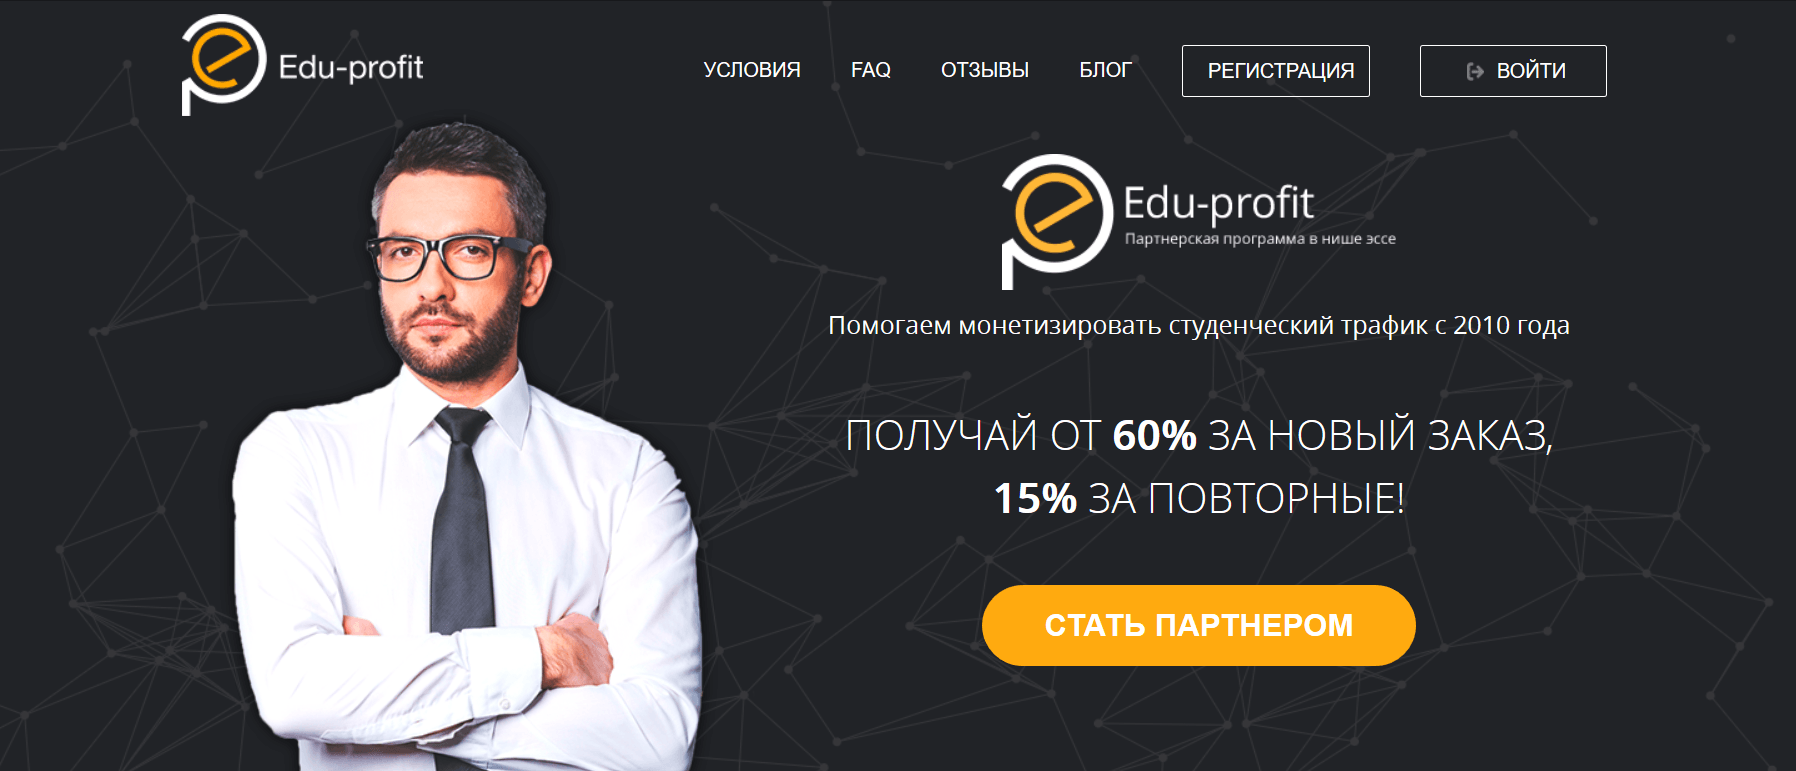 Edu-profit - партнерская программа по монетизации студенческого траифка